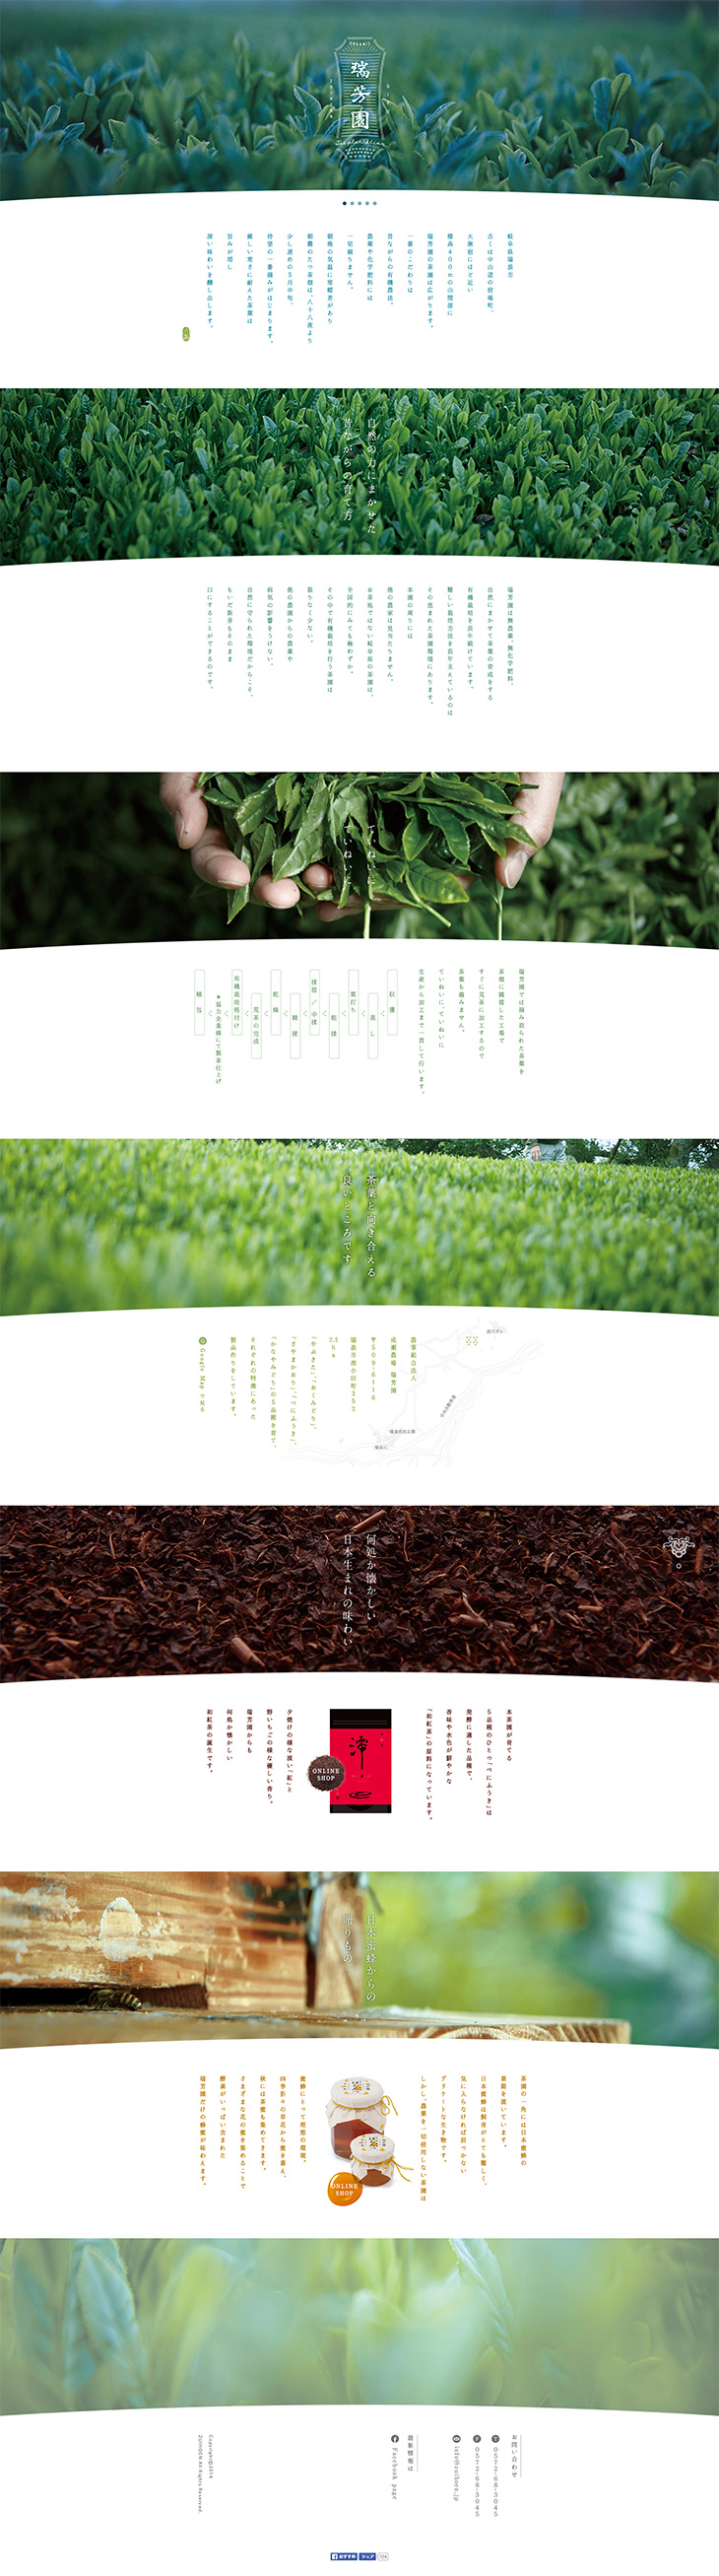 瑞芳園 - 昔ながらの有機農法で作る旨いお茶_pc_1